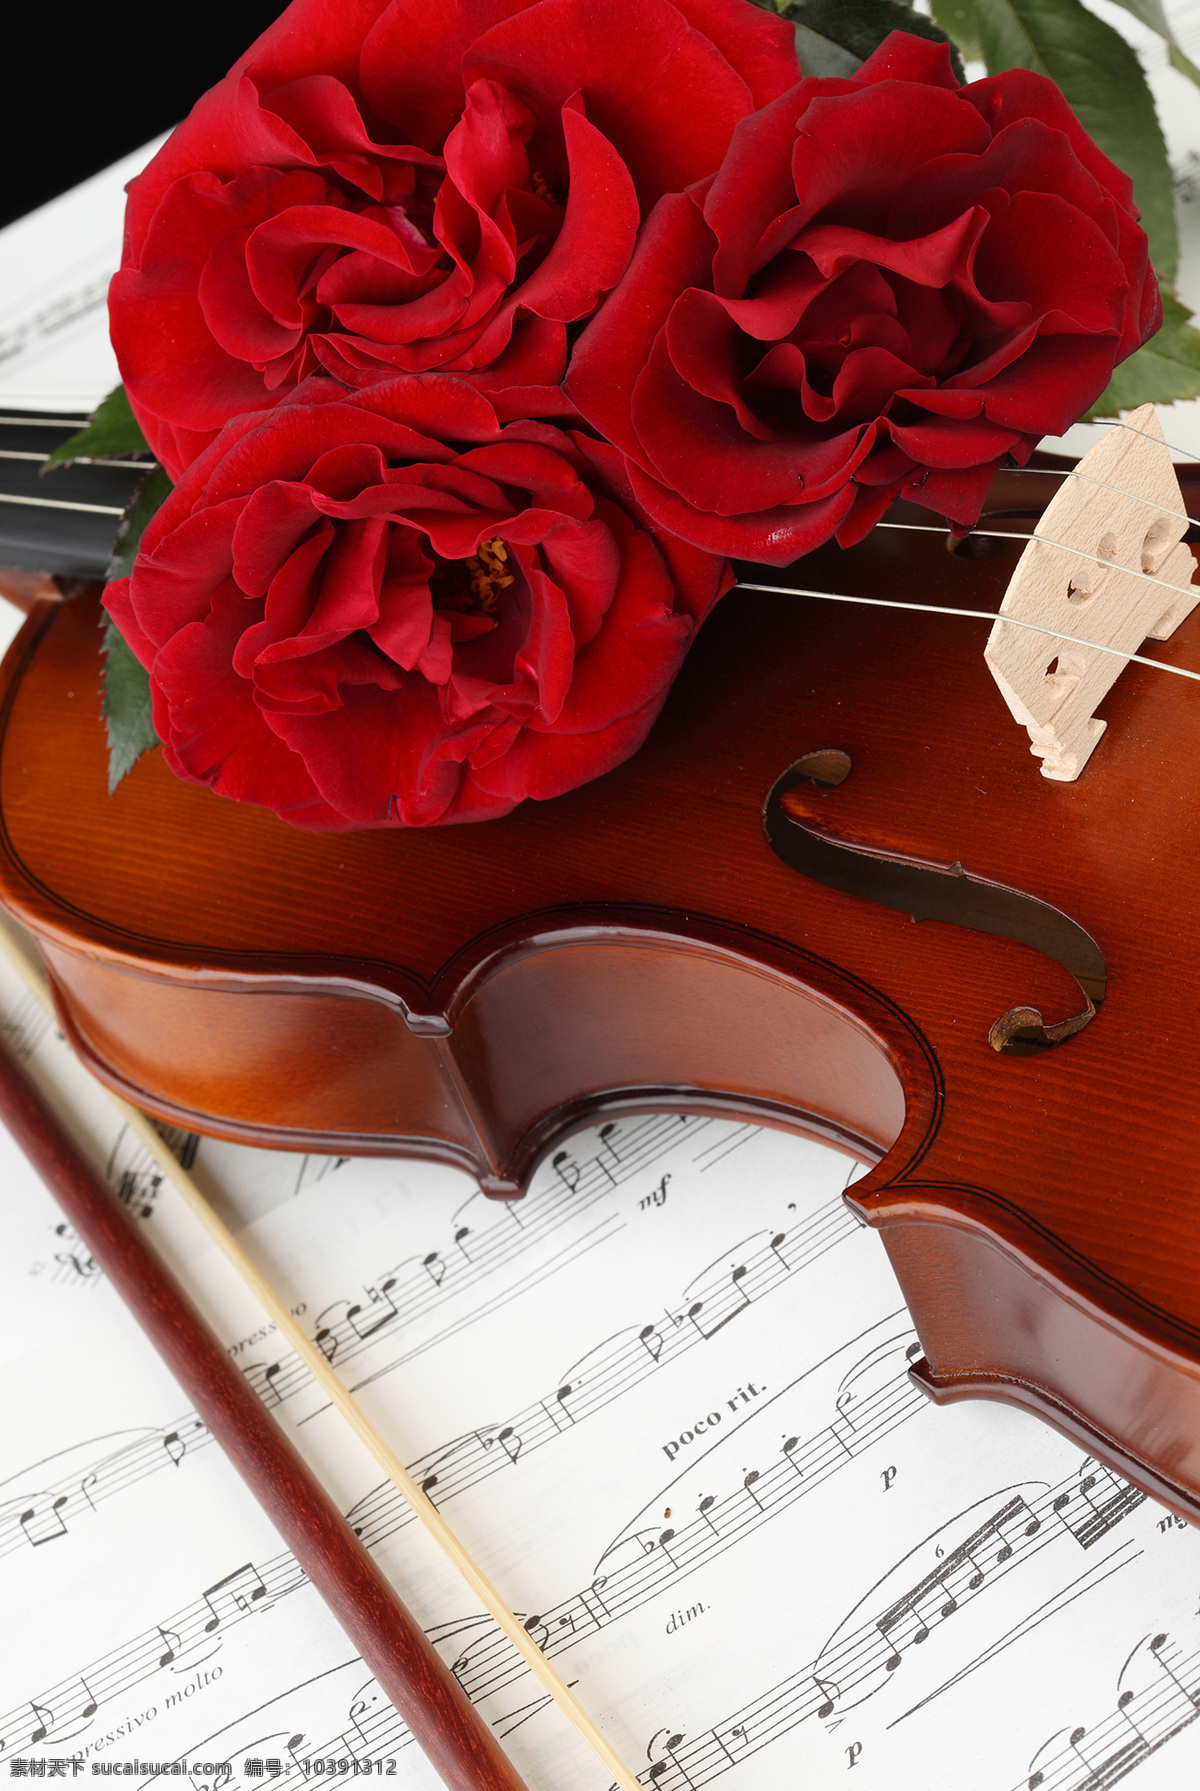 盛开 玫瑰花 五线谱 花朵花卉 美丽花朵 鲜花乐谱 五线音谱 音乐 小提琴 影音娱乐 生活百科